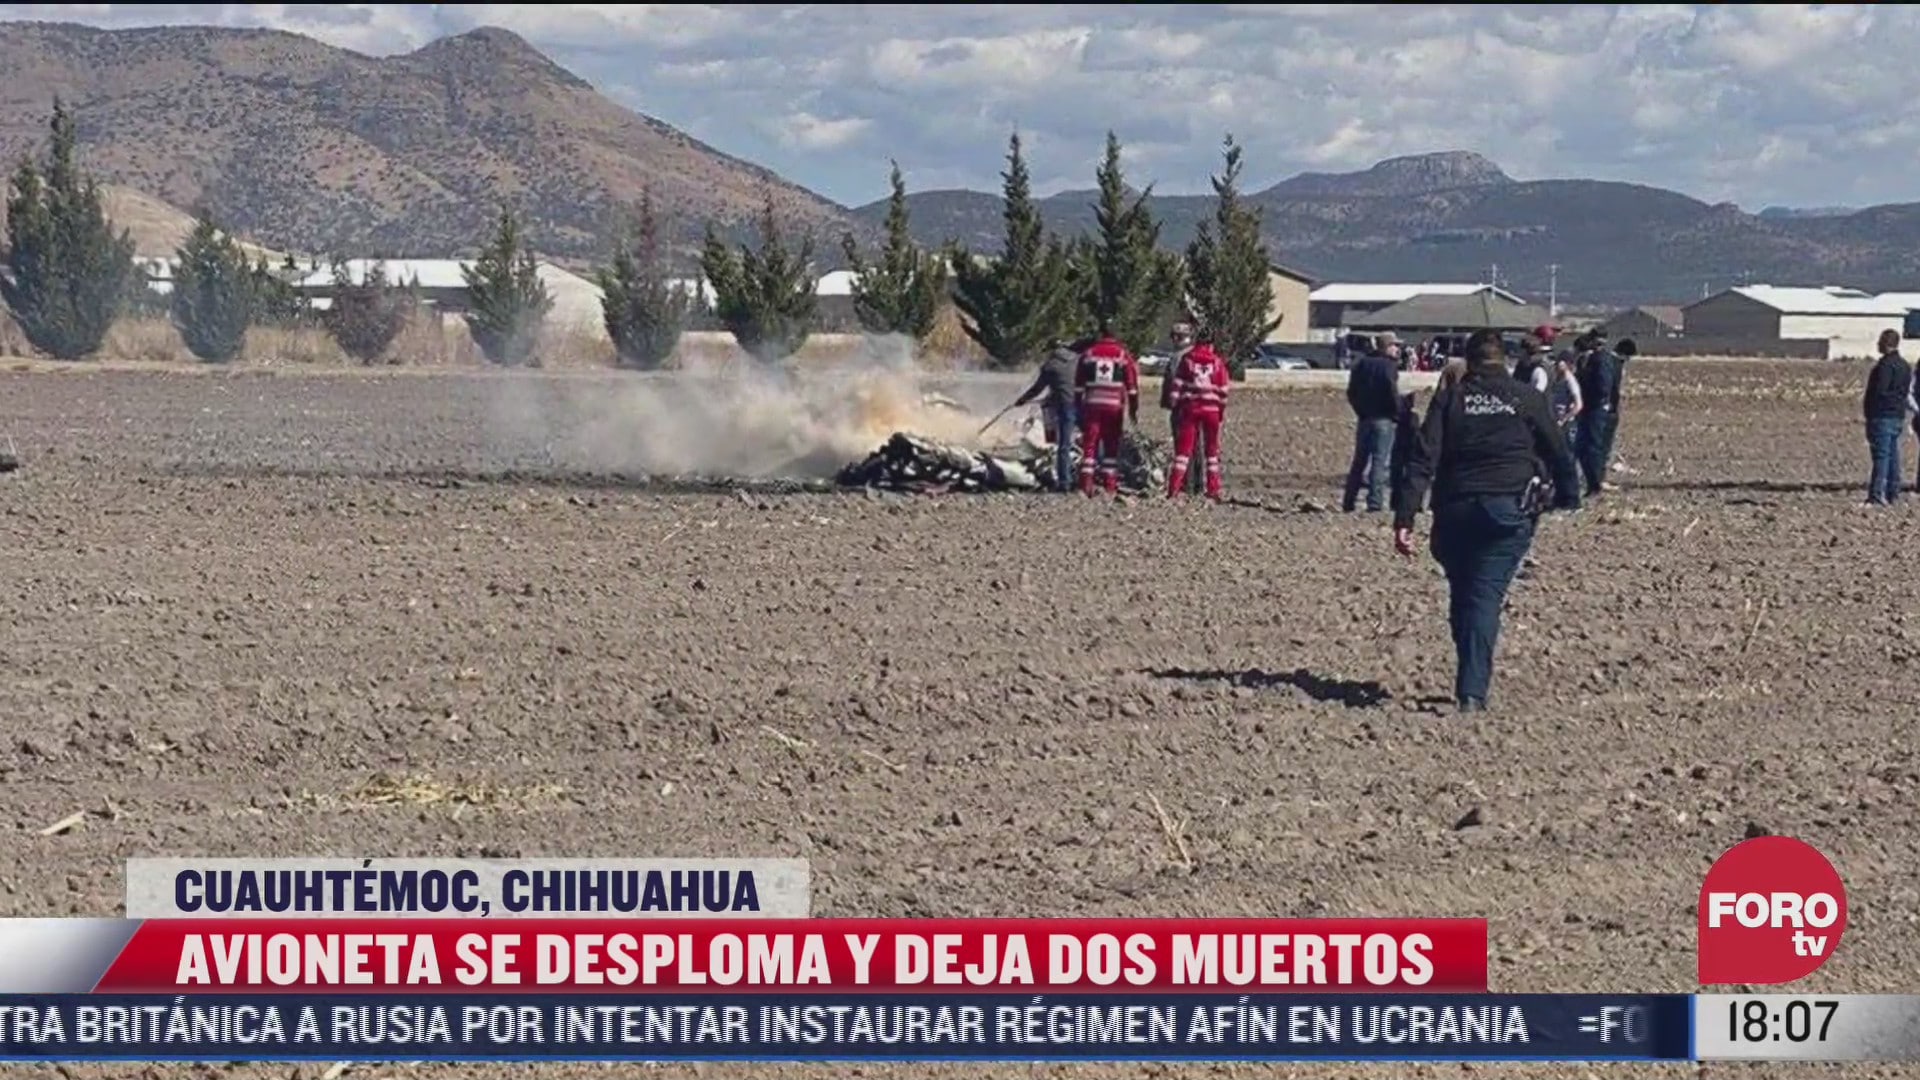 avioneta se desploma y deja 2 muertos en chihuahua